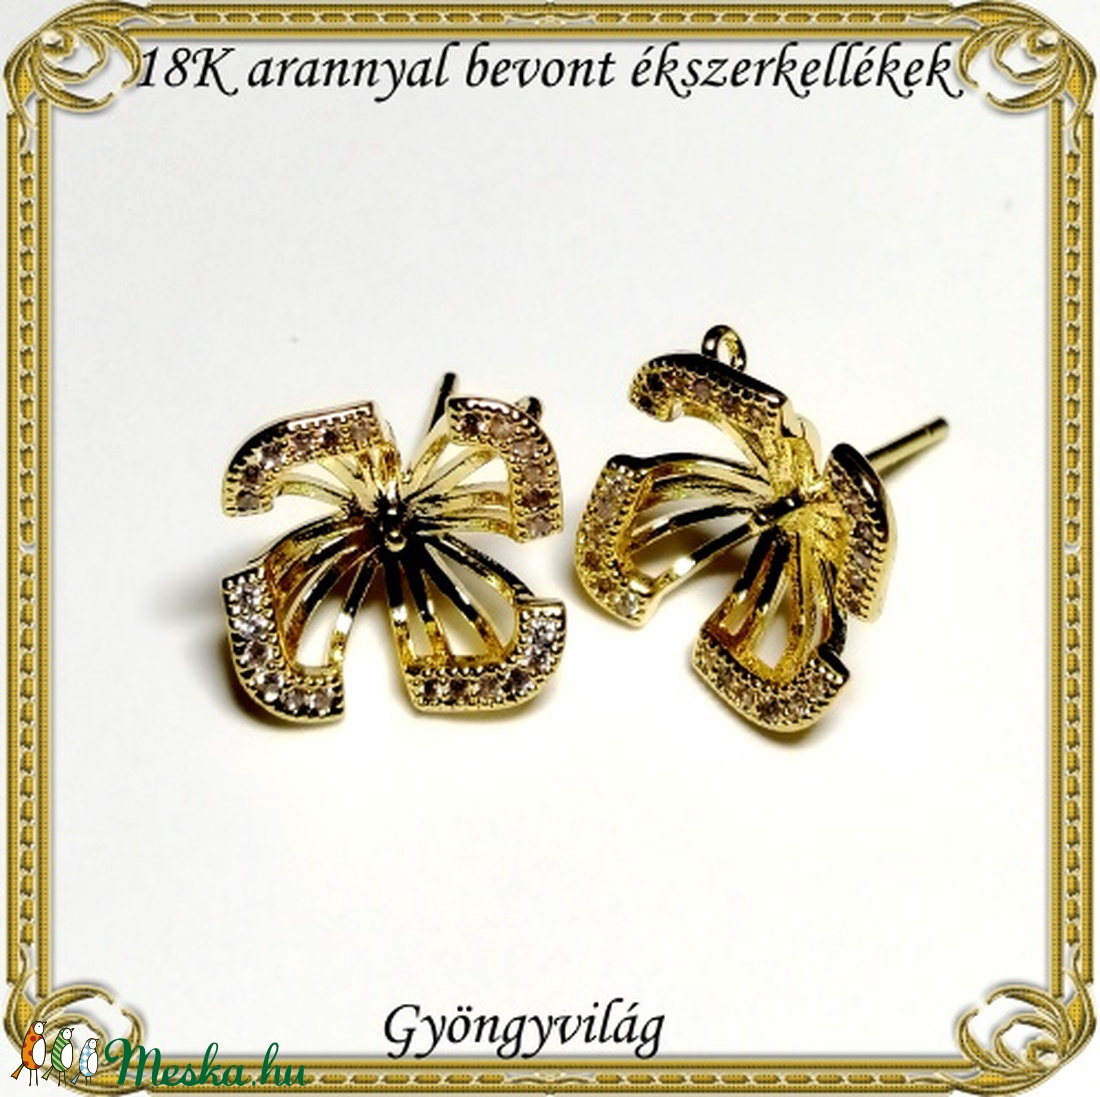 18K arannyal bevont ékszerkellék: fülbevalóalap  ABFK 01 - gyöngy, ékszerkellék - egyéb alkatrész - Meska.hu